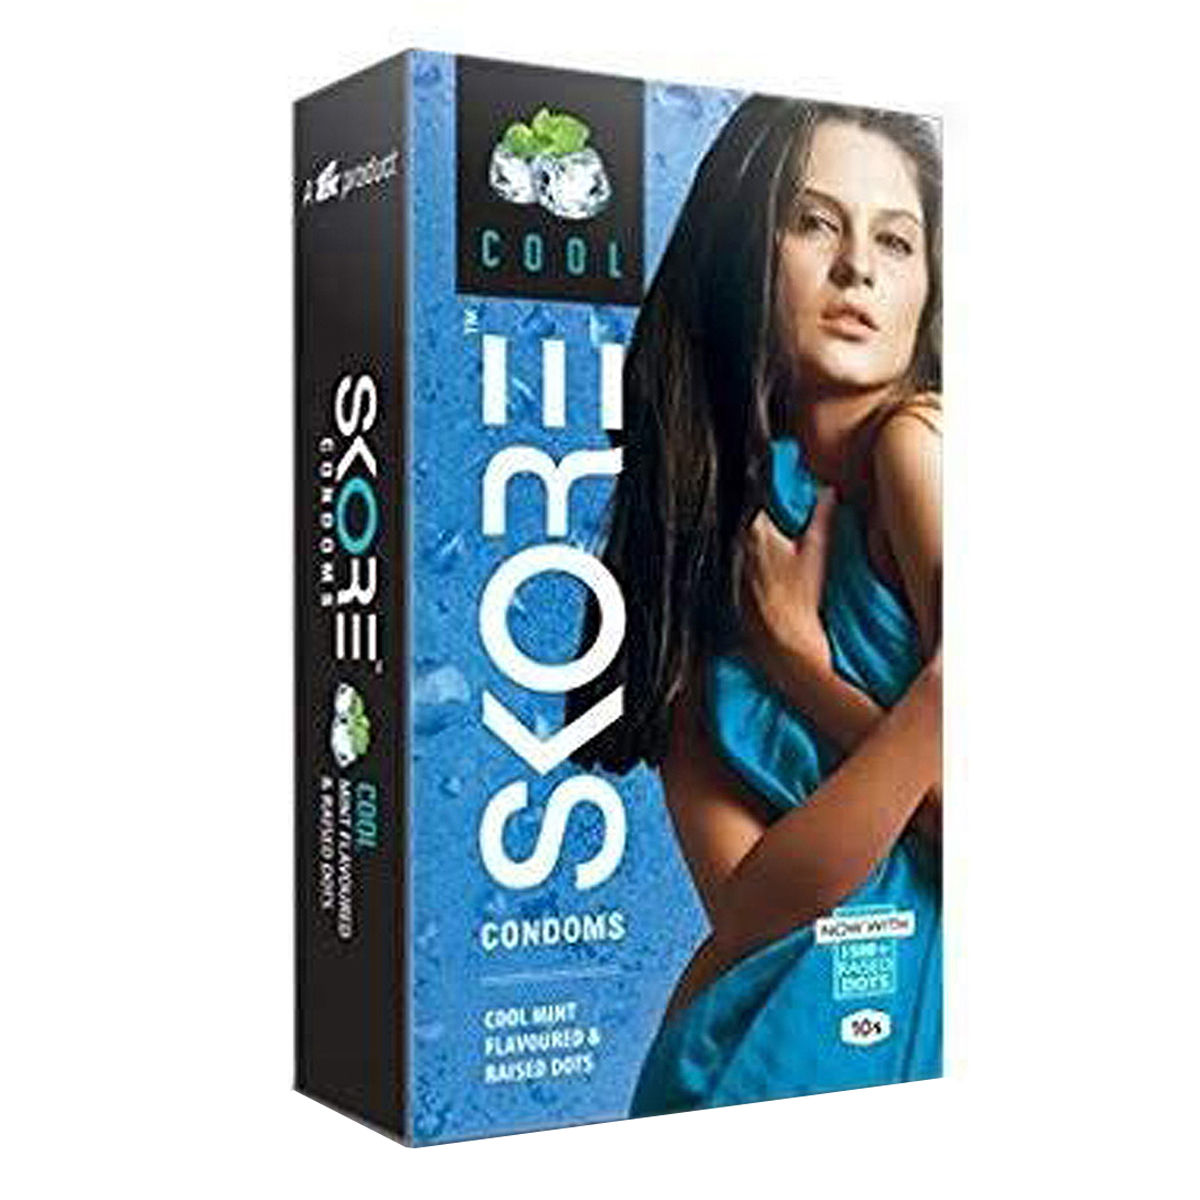 Buy Skore Cool Condoms, 10 Count Online